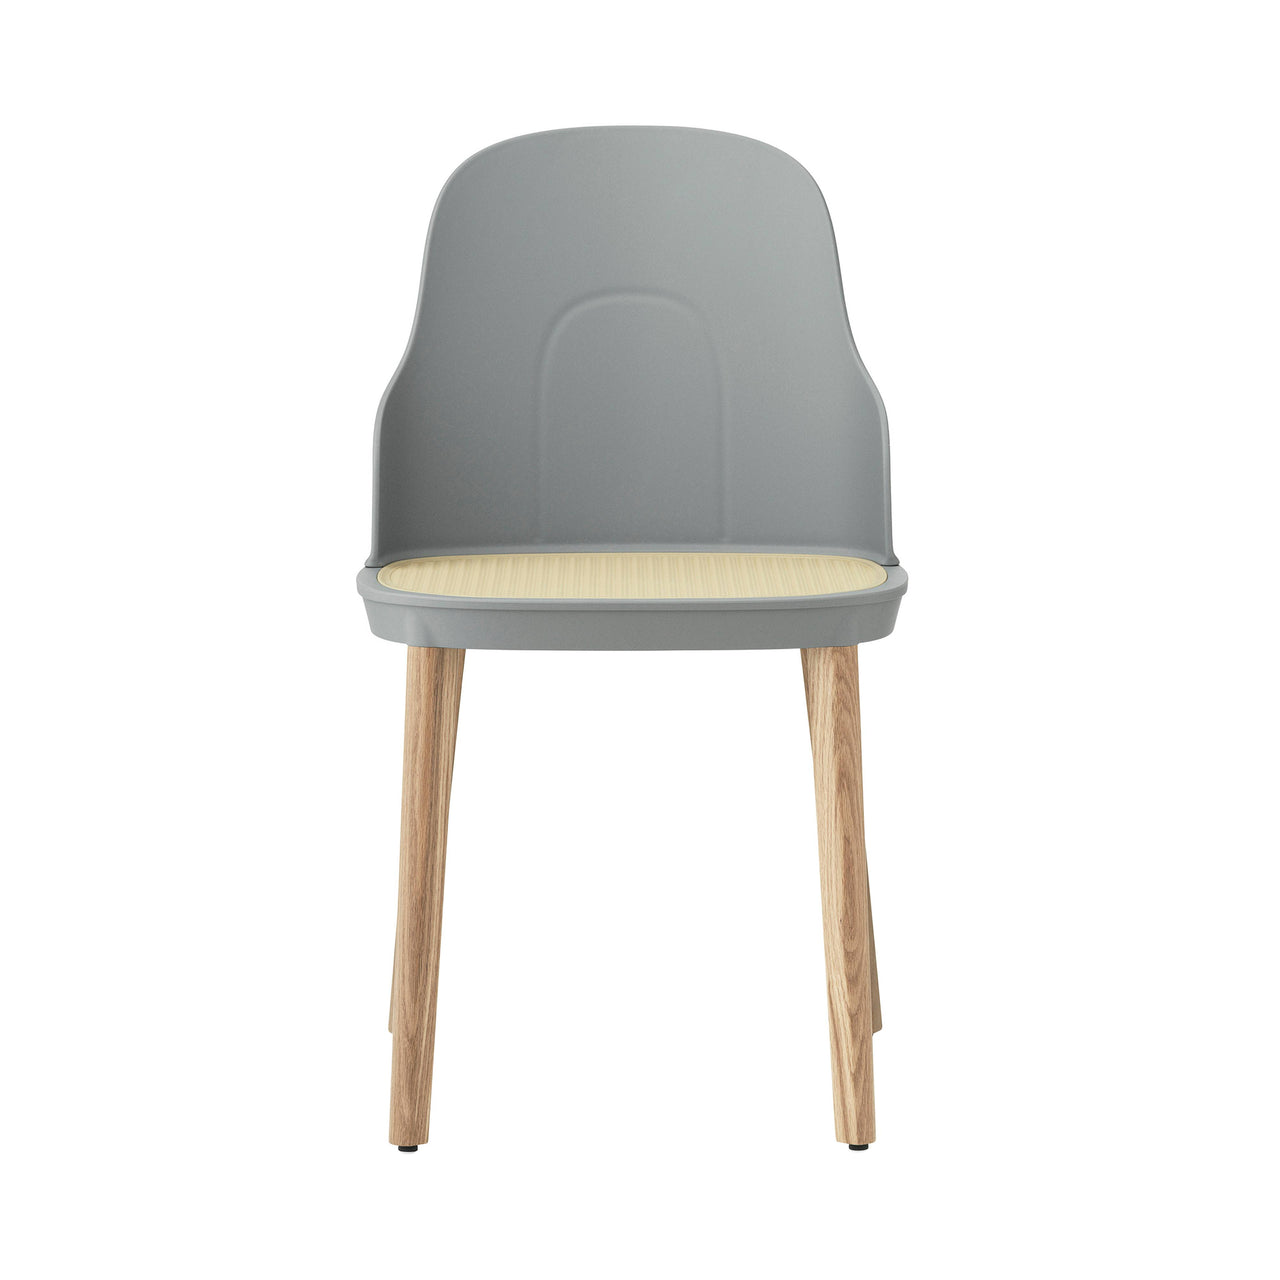 Allez Chair: Molded Wicker + Grey + Oak